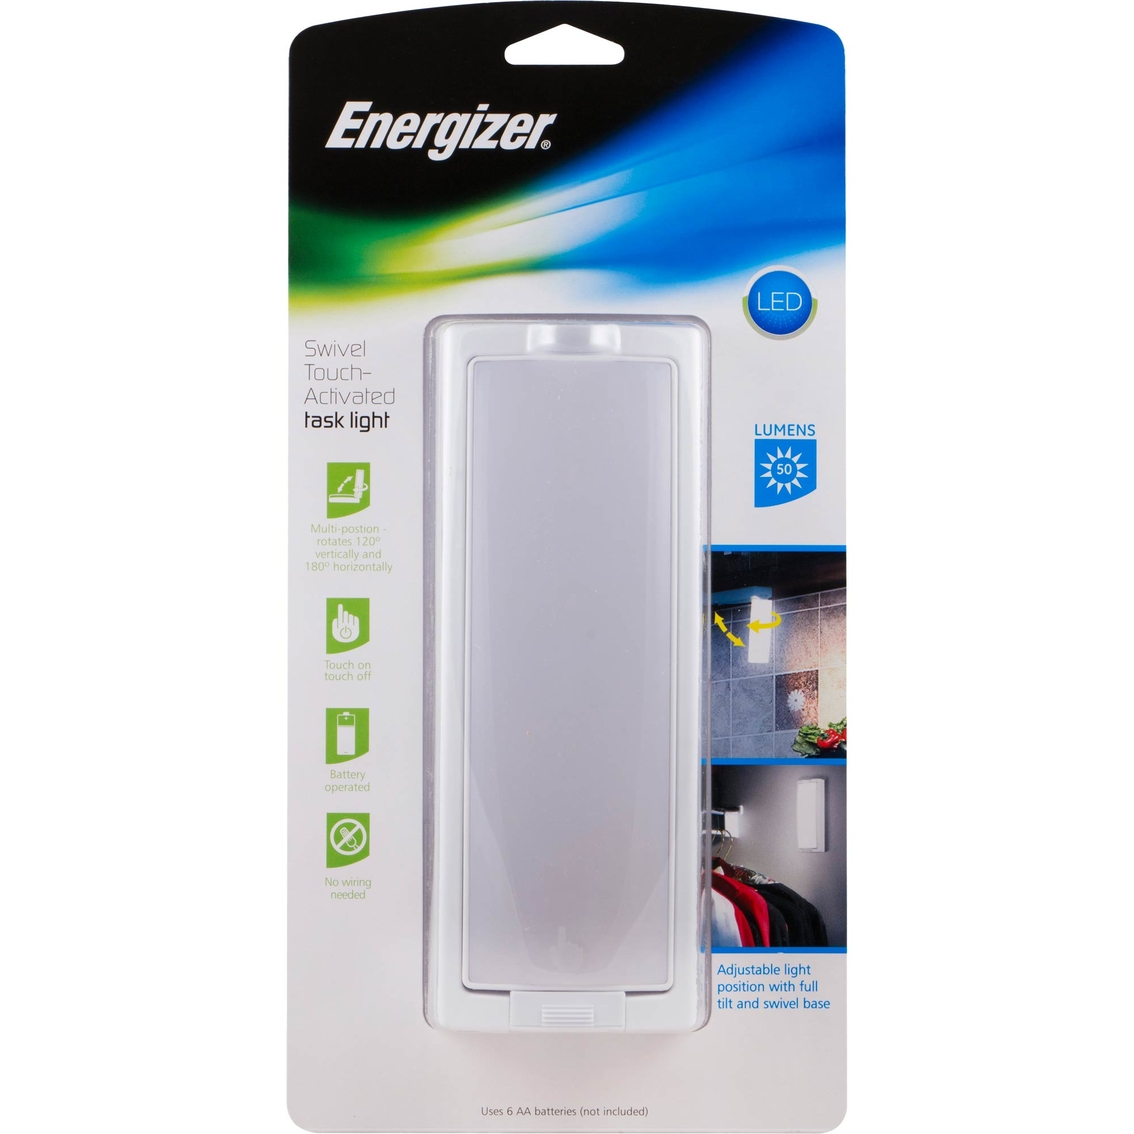 Energizer LED Swivel Utility Light - Image 3 of 6